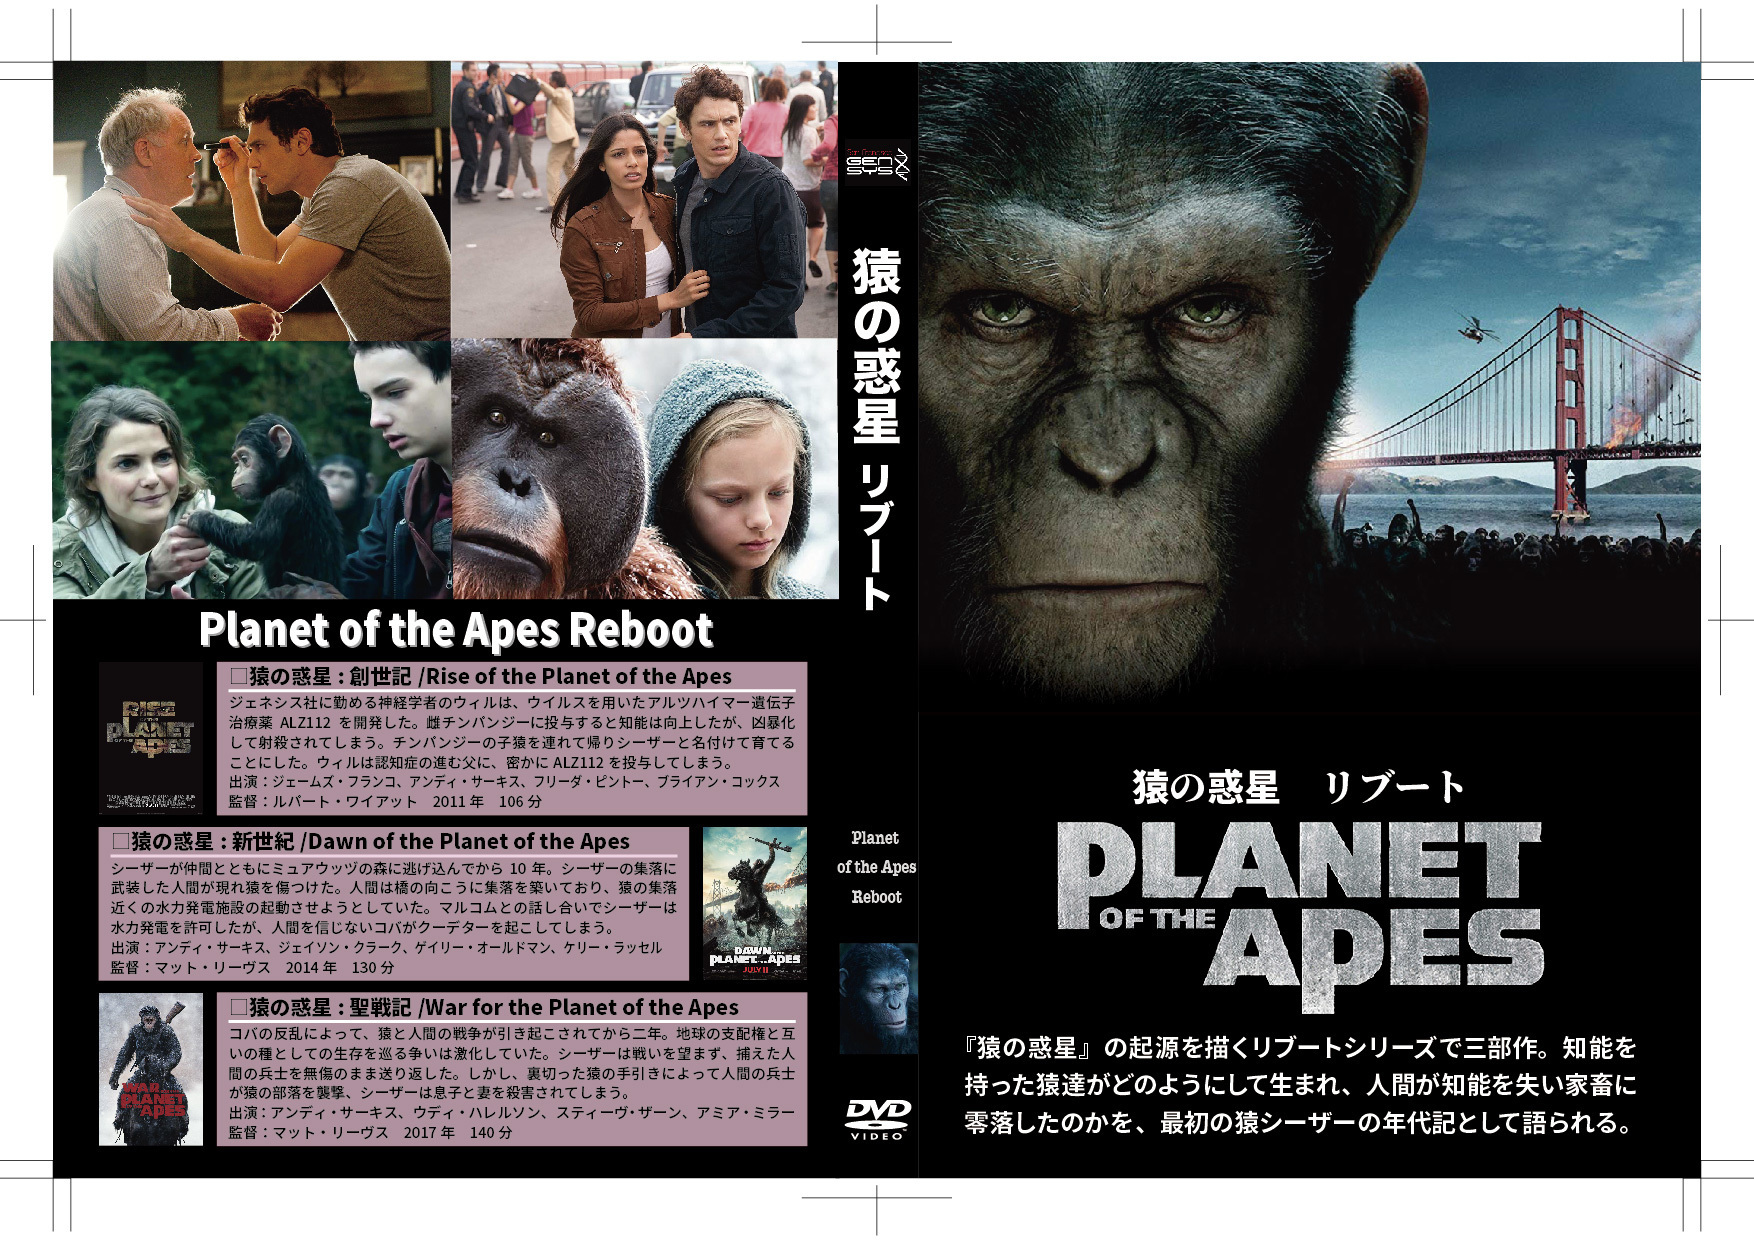 猿の惑星 リブート】シーザーはアルツハイマーの落とし子だった/DVDジャケット: 映画DVDブルーレイを52倍楽しむ方法